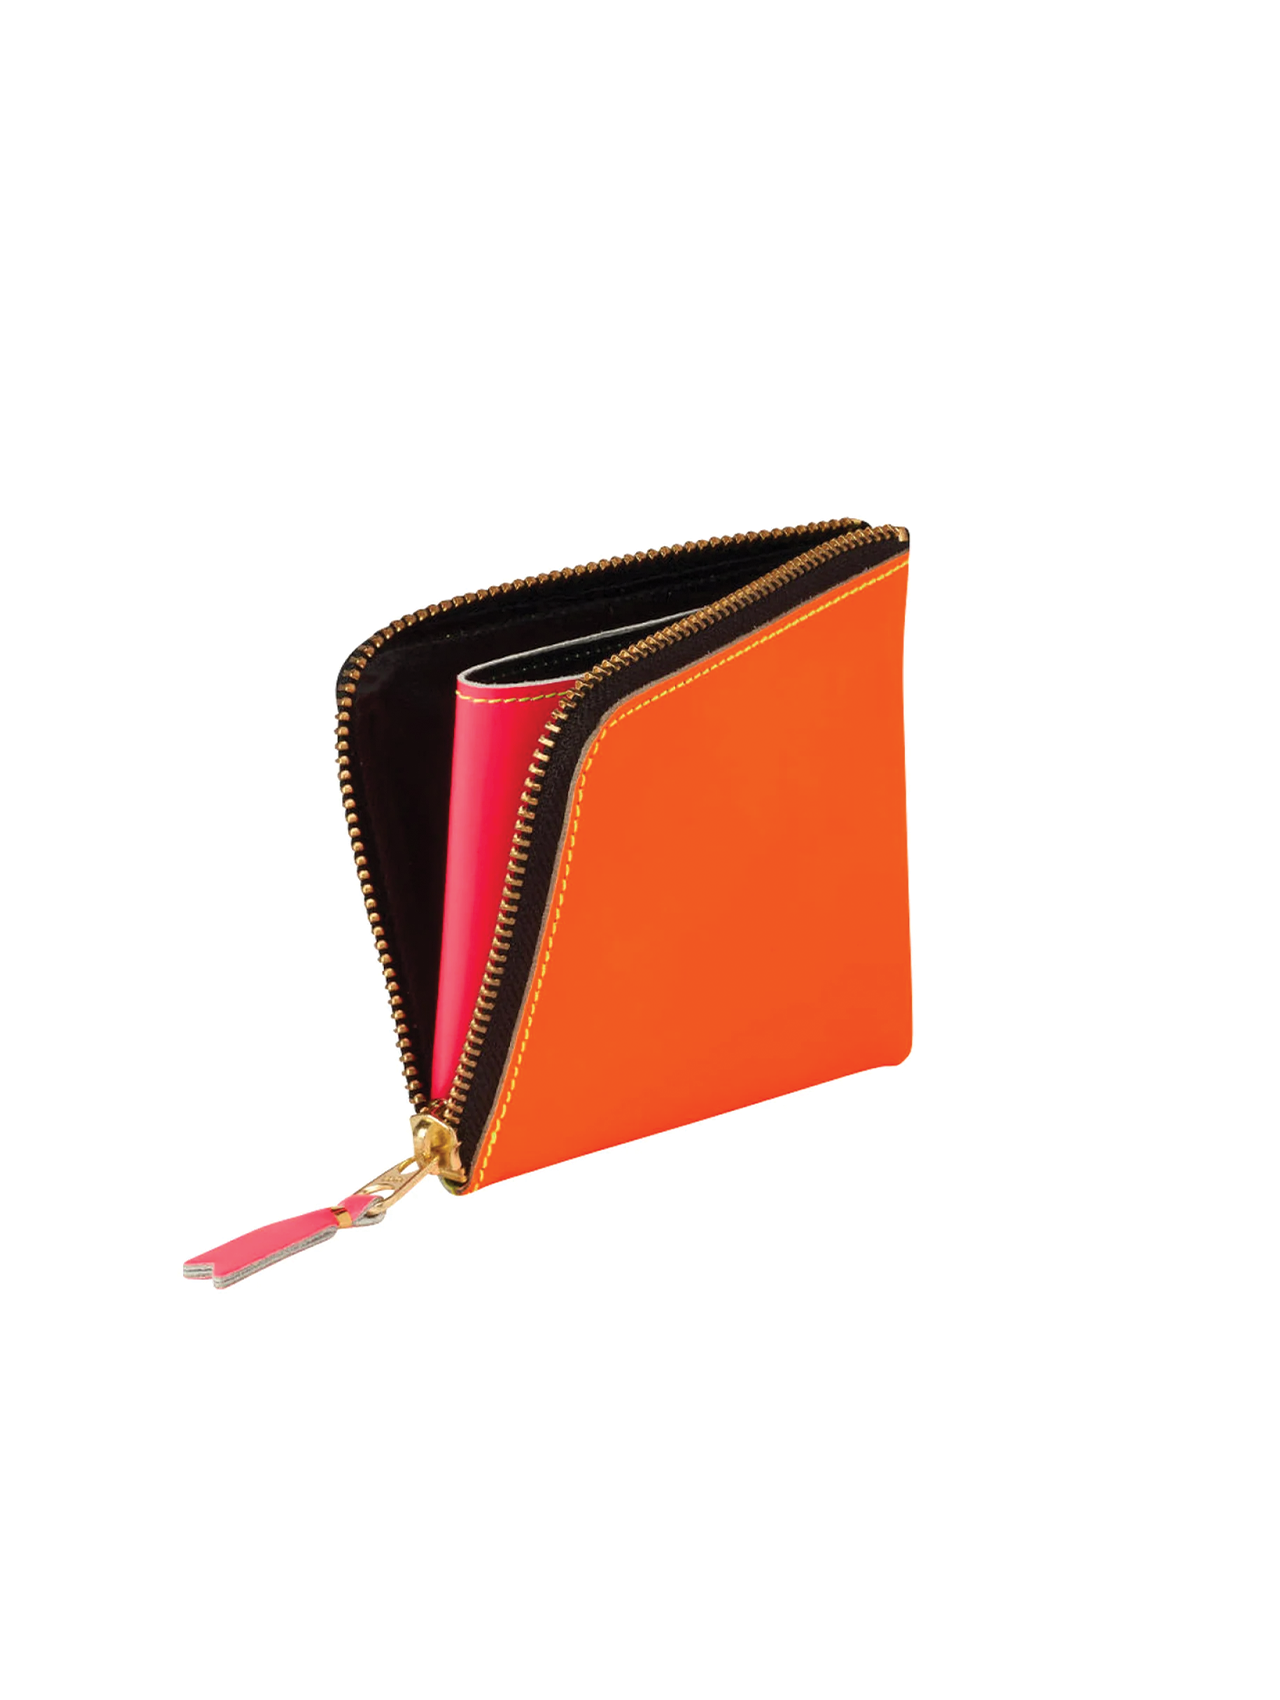 CDG Yellow/Orange Small Zip Wallet